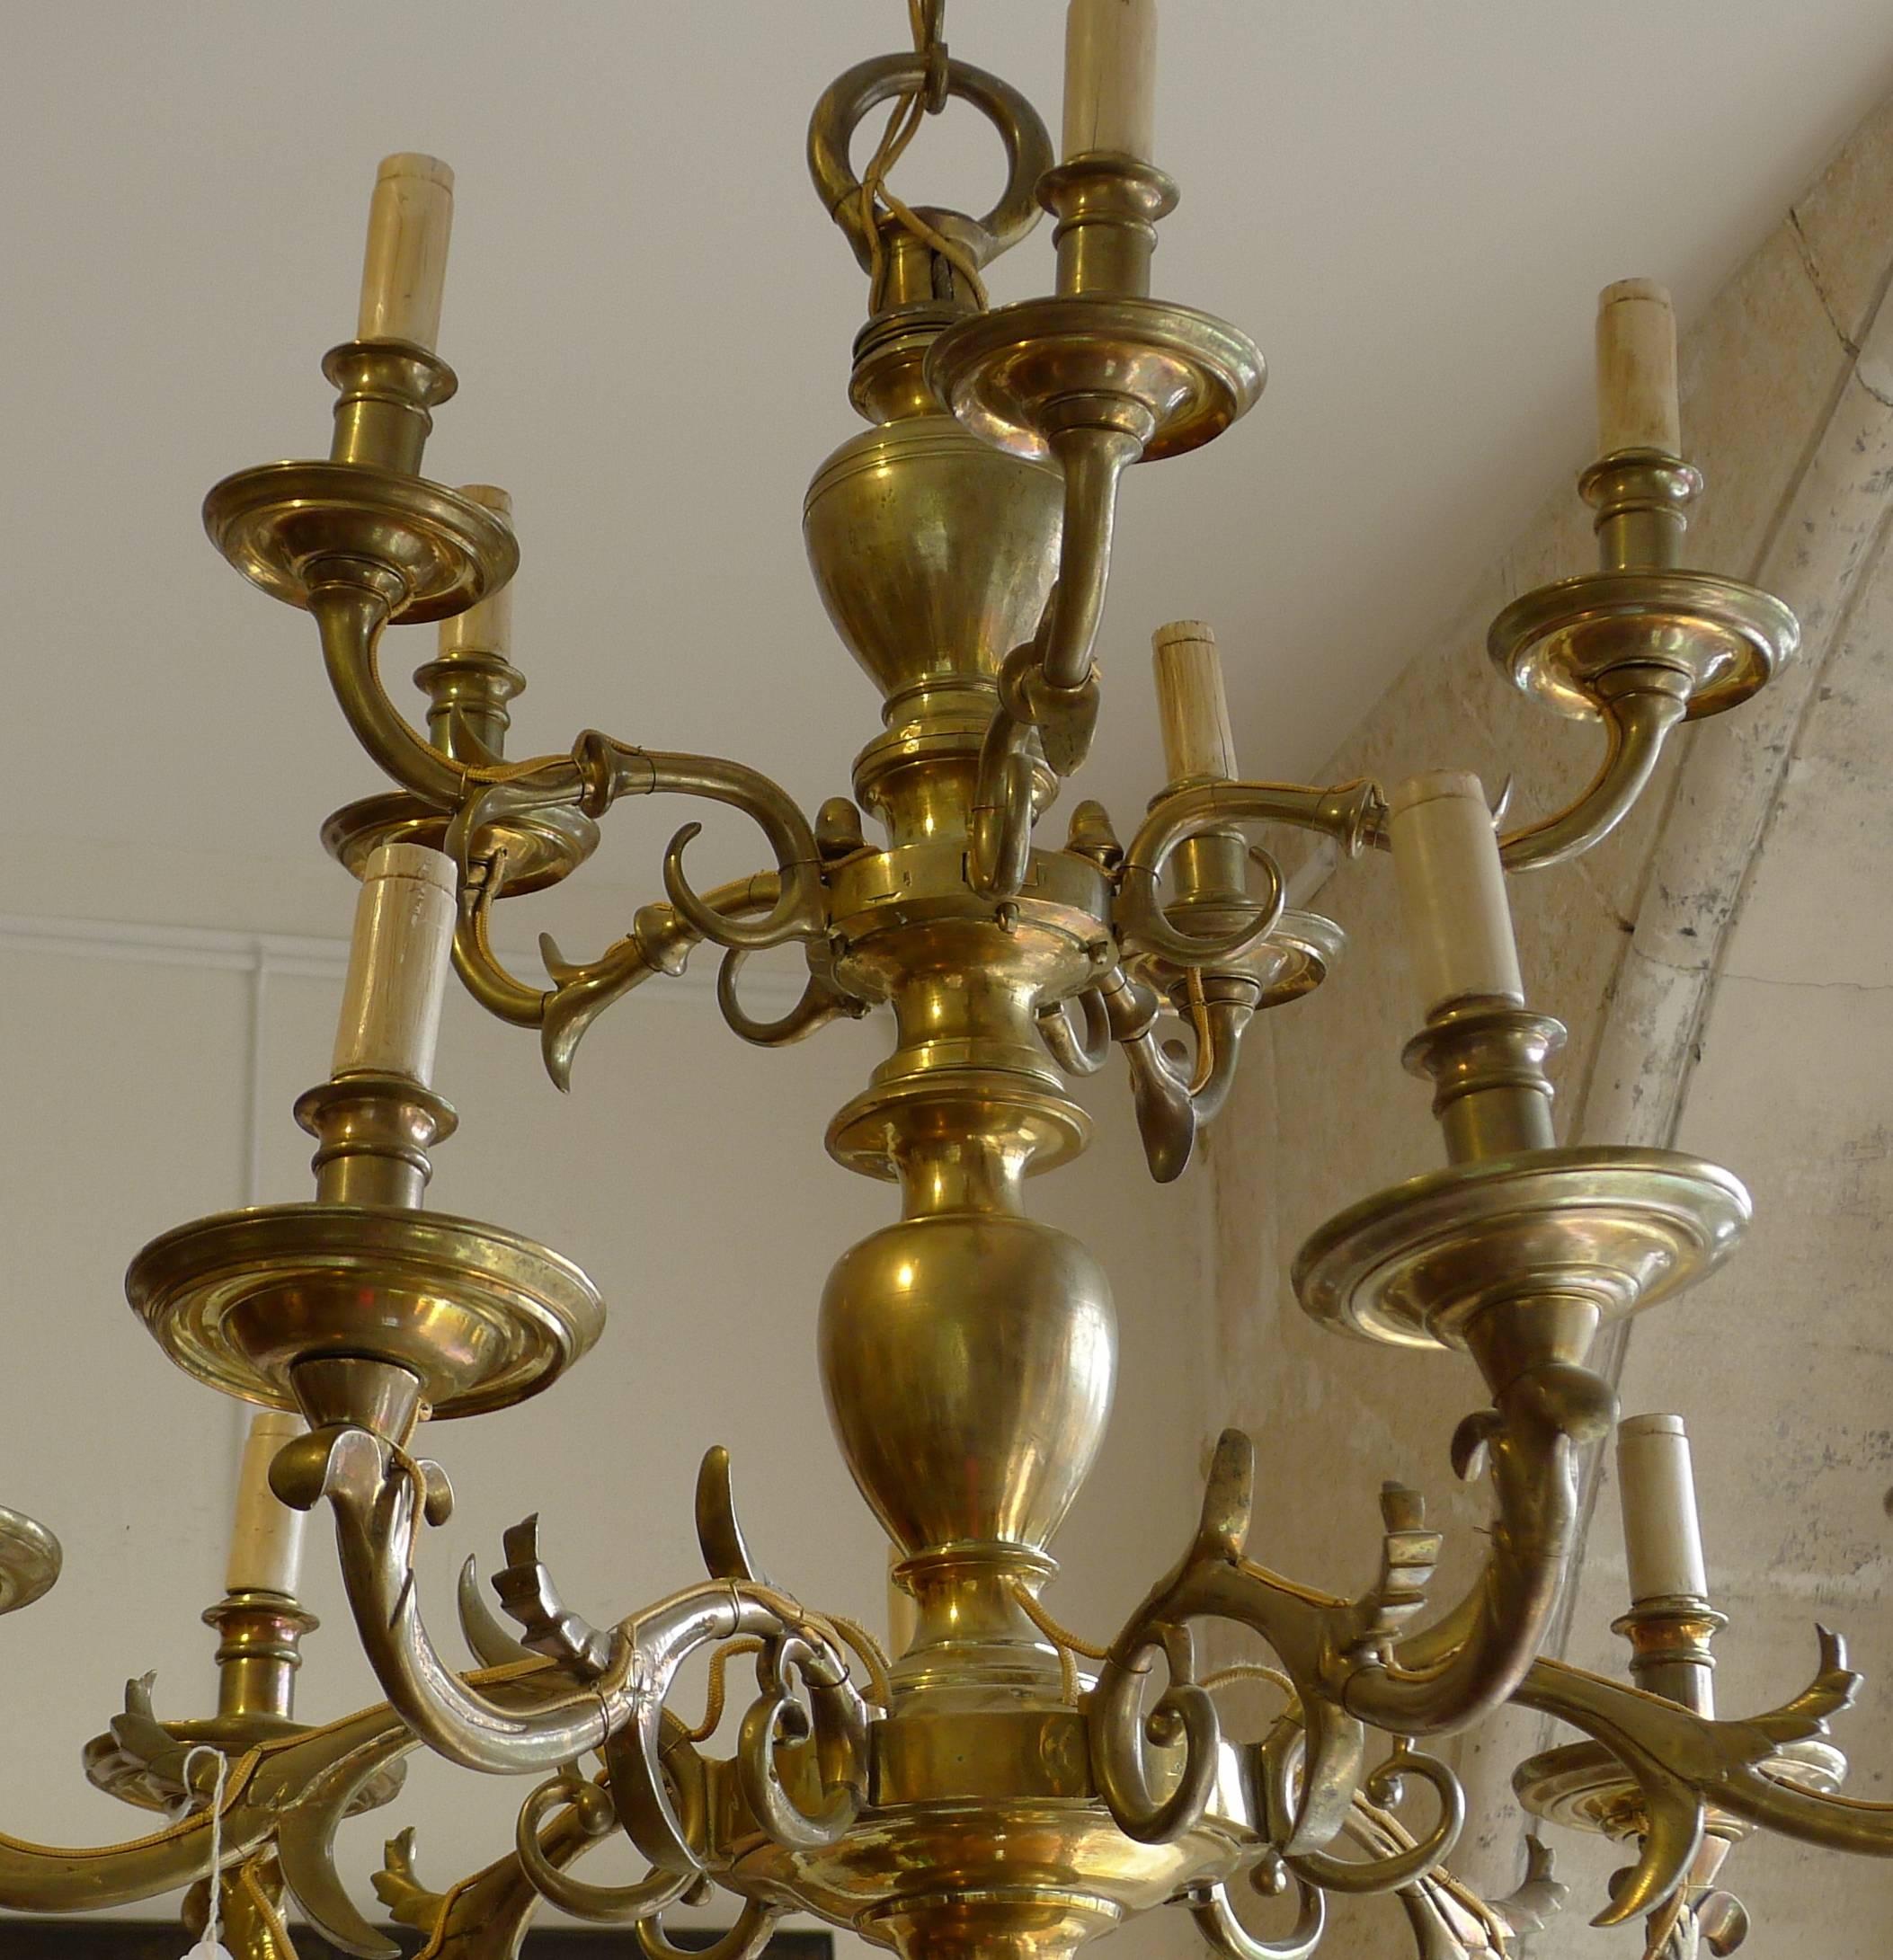 17th century chandelier